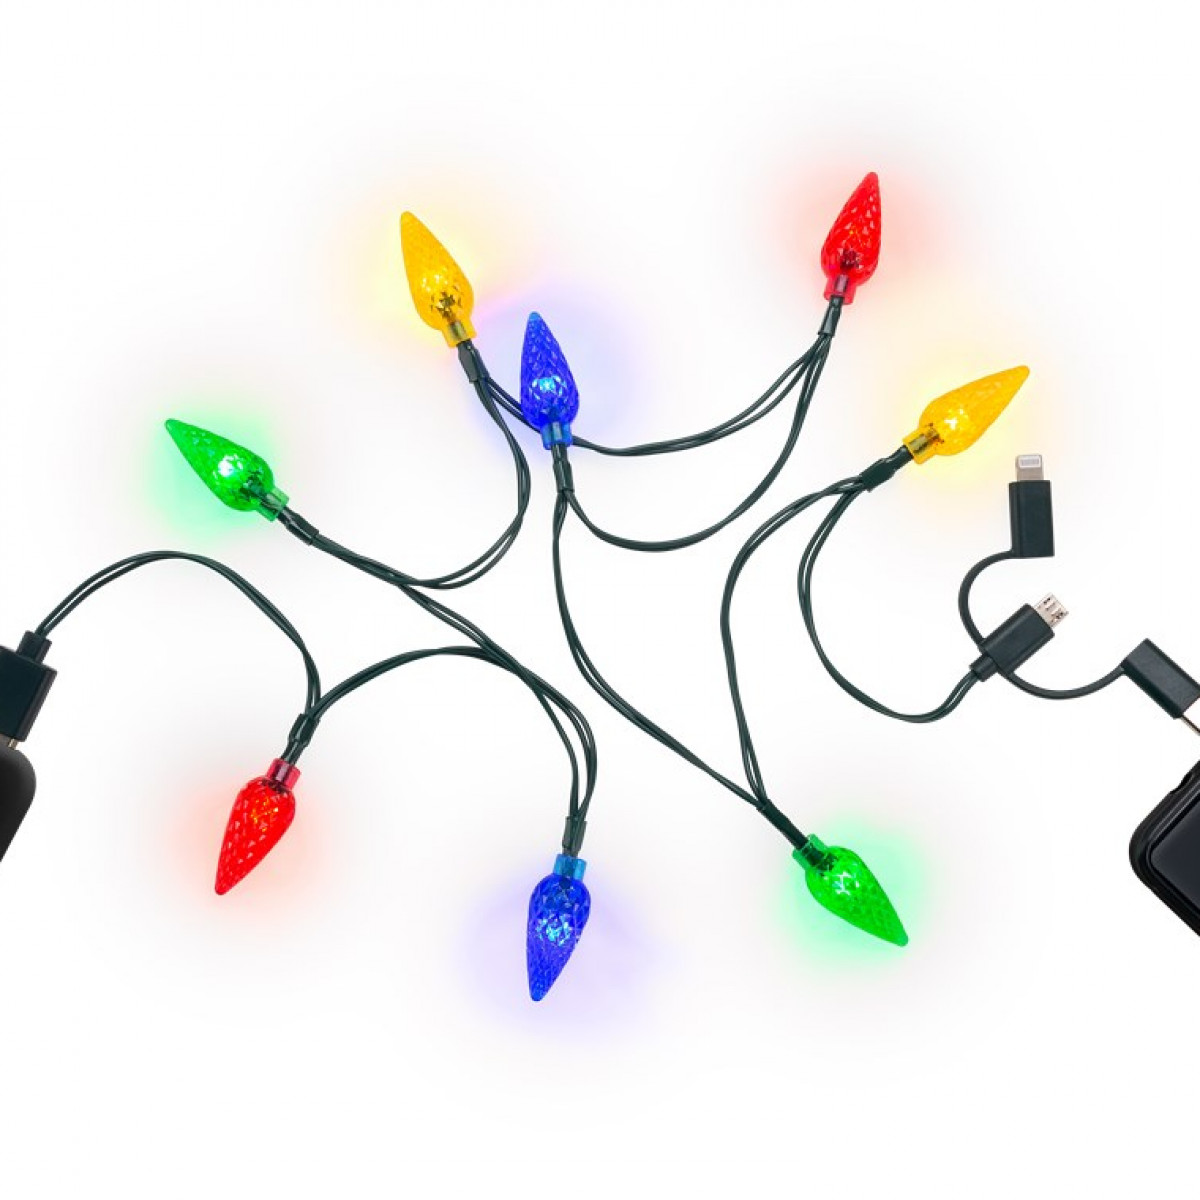 GOOBAY Smartphone-USB-Ladekabel mit LED-Leuchten USB Kabel